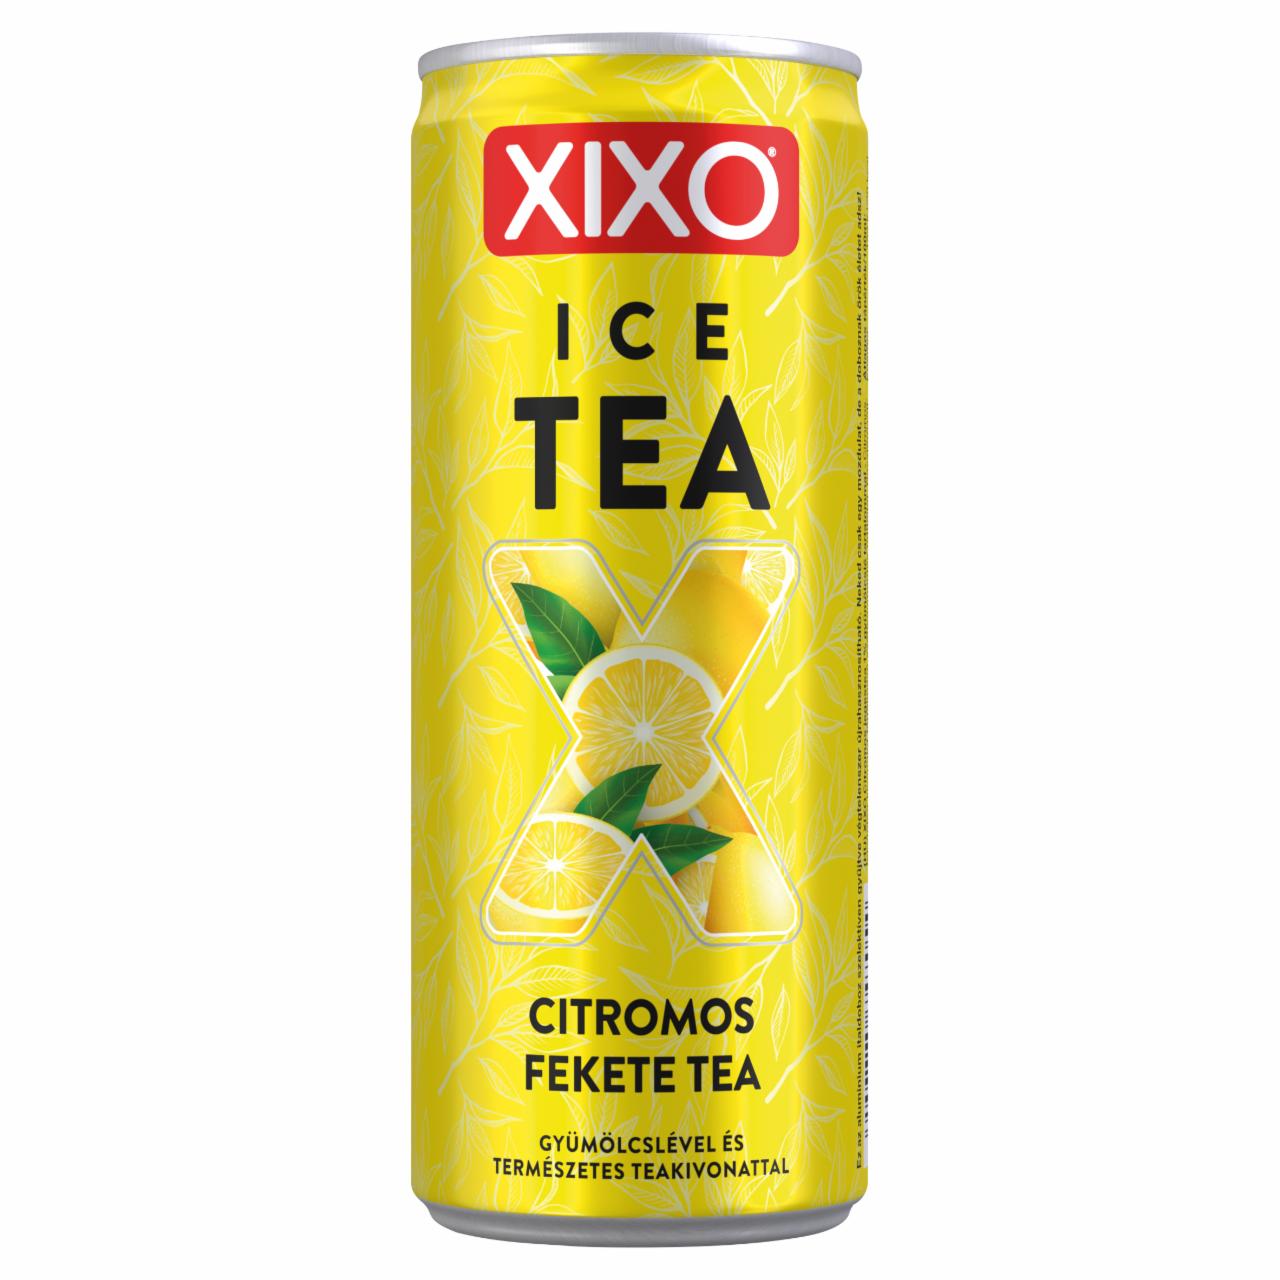 Képek - XIXO Ice Tea citromos fekete tea 250 ml